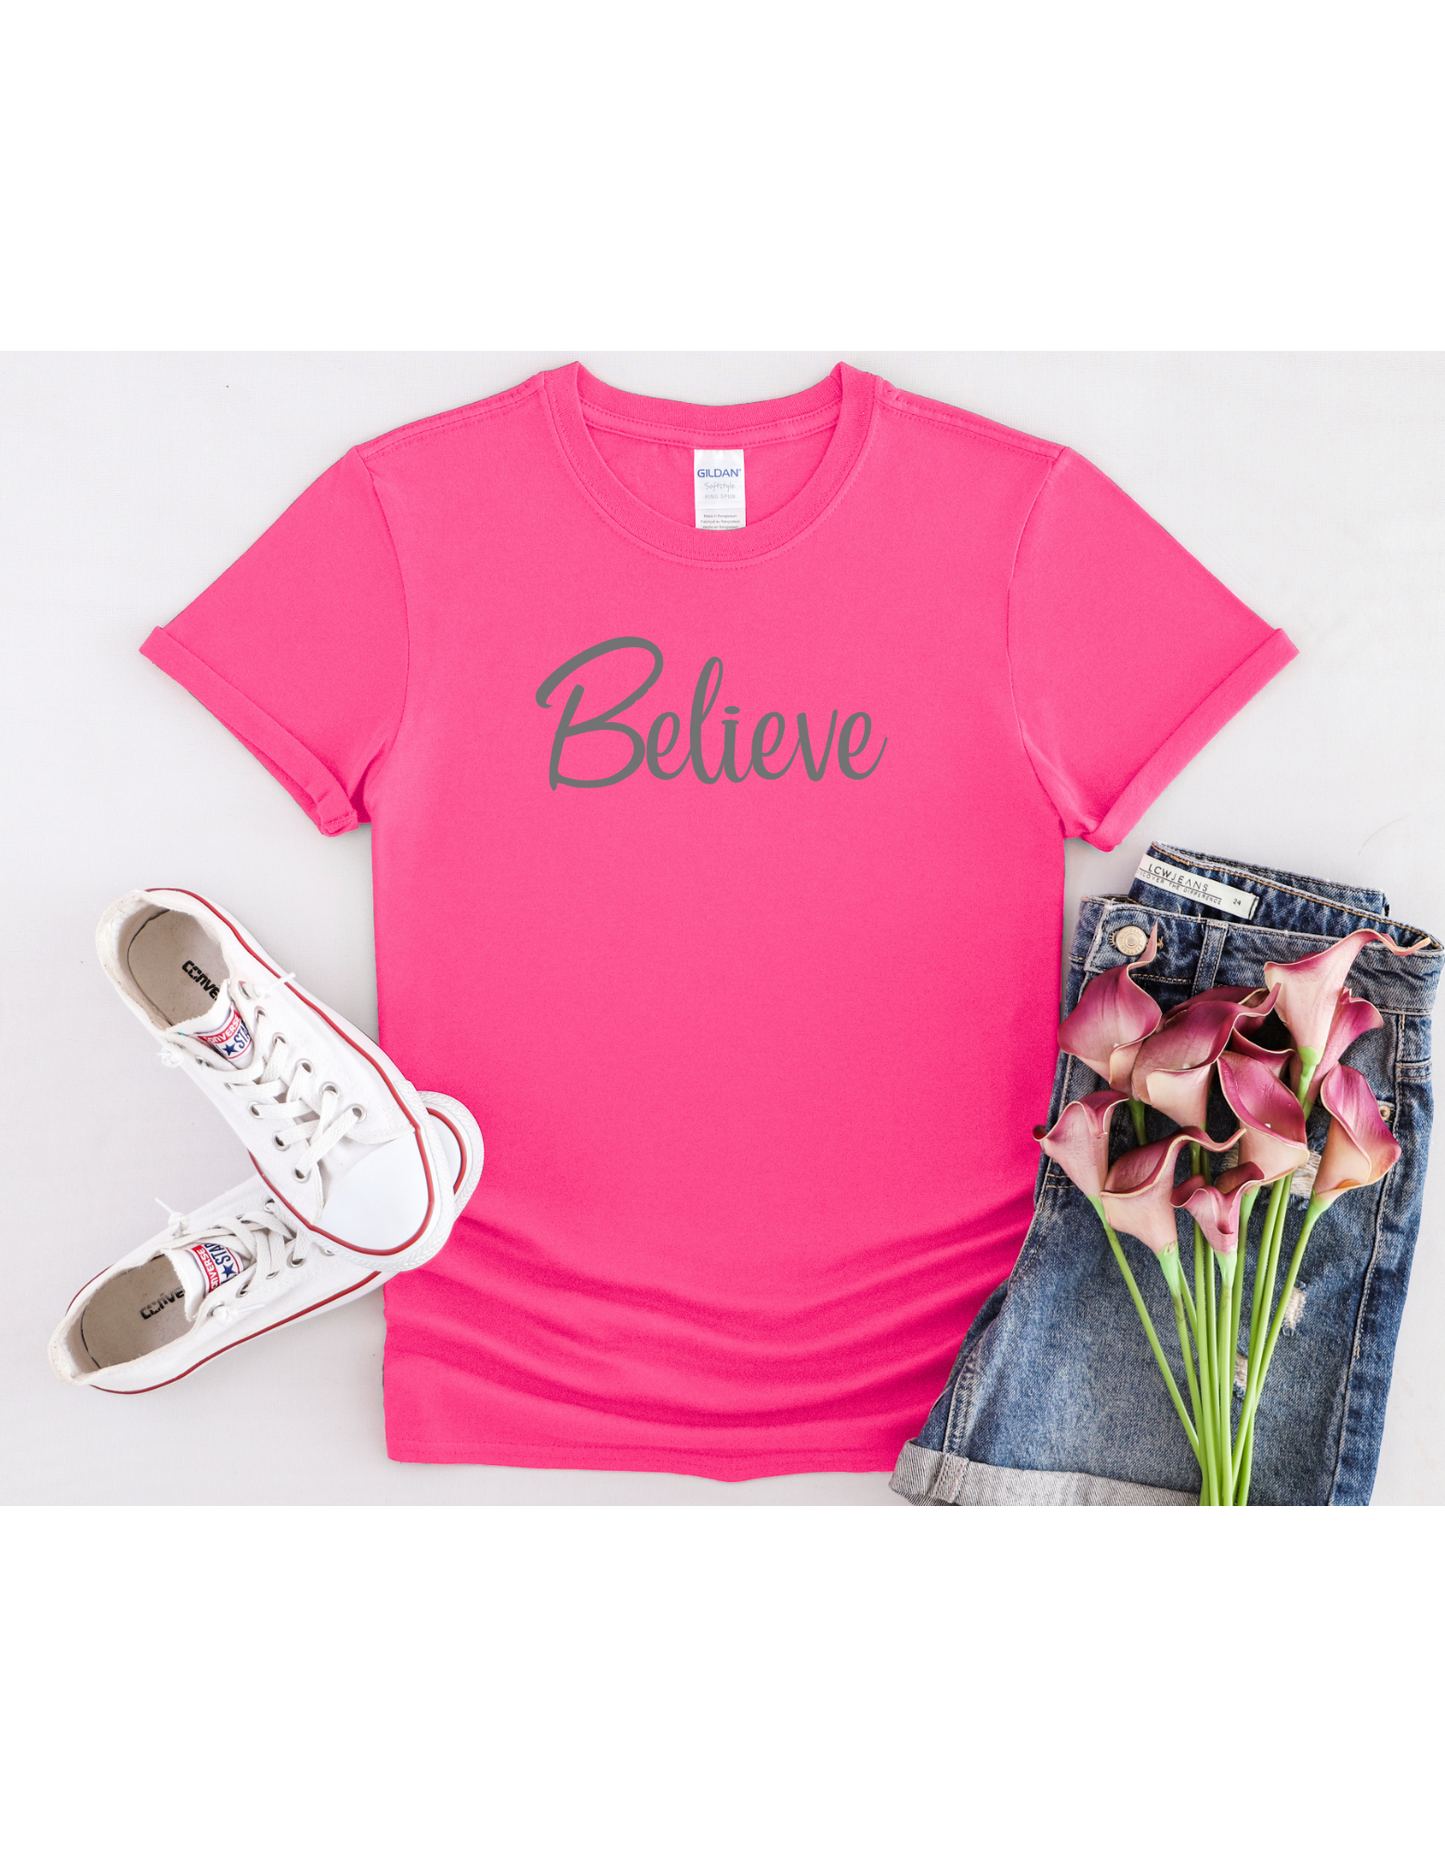 Believe Motivational Shirt, Inspirational Tee, Affirmation Shirt, Christian Tee